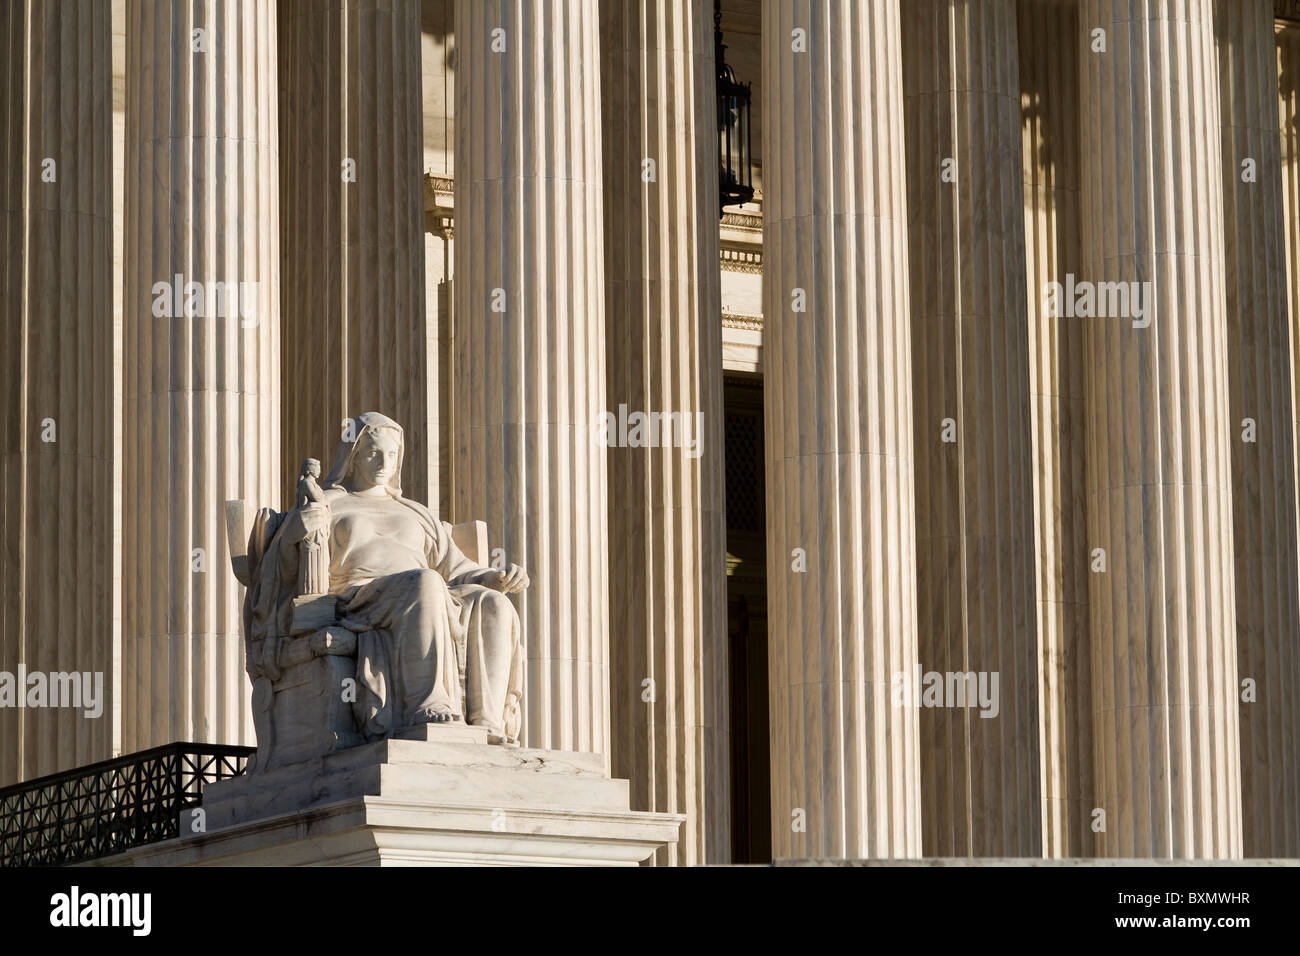 Contemplation of Justice Sculpture, Supreme Court Building, Washington DC Stock Photo